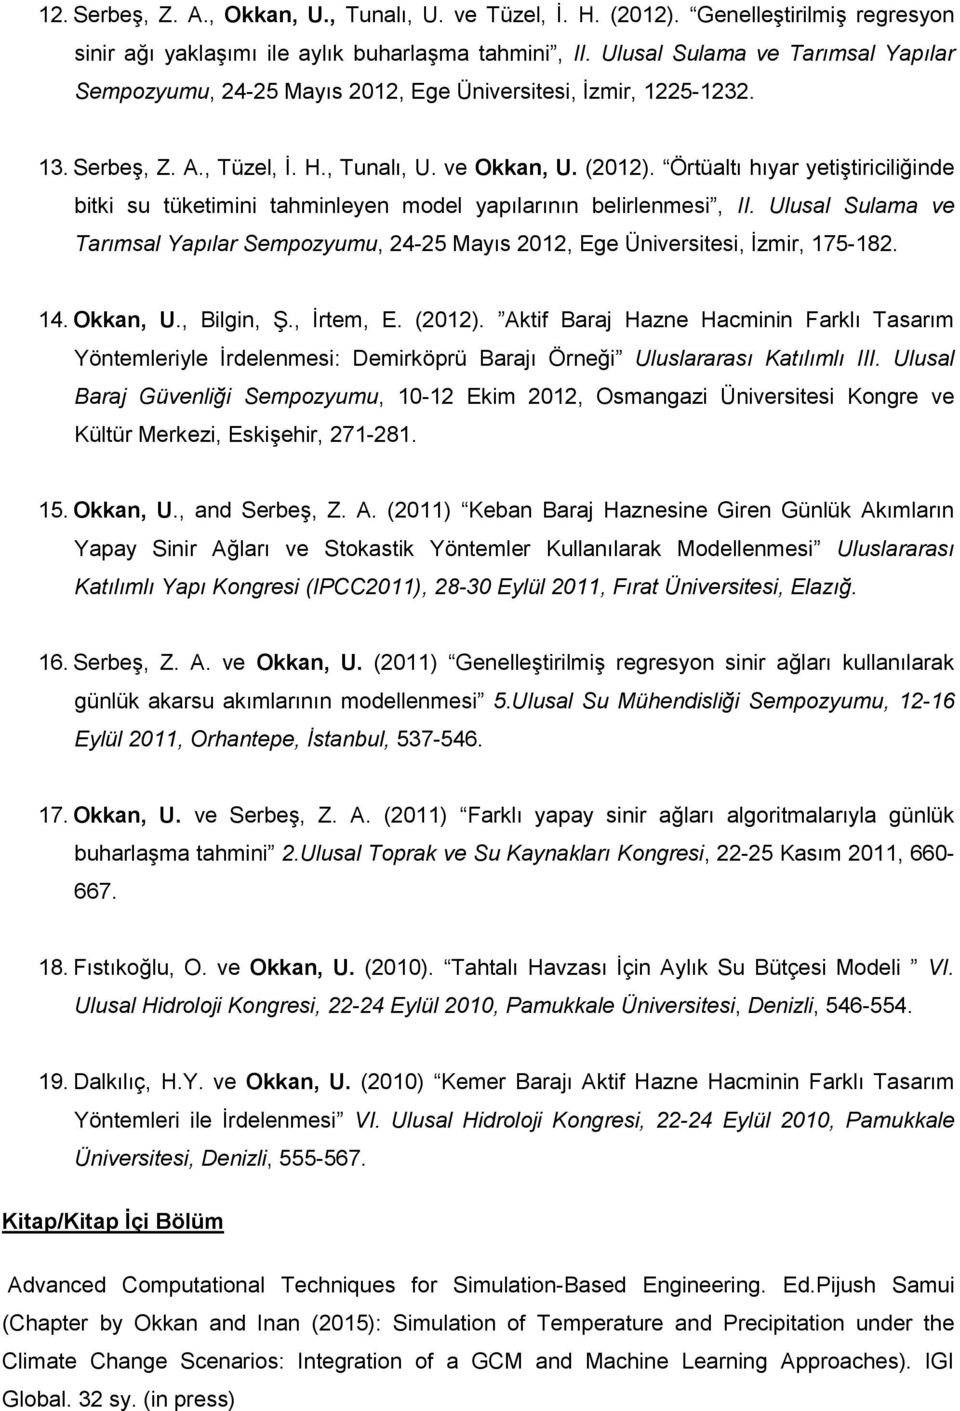 Örtüaltı hıyar yetiştiriciliğinde bitki su tüketimini tahminleyen model yapılarının belirlenmesi, II. Ulusal Sulama ve Tarımsal Yapılar Sempozyumu, 24-25 Mayıs 2012, Ege Üniversitesi, İzmir, 175-182.